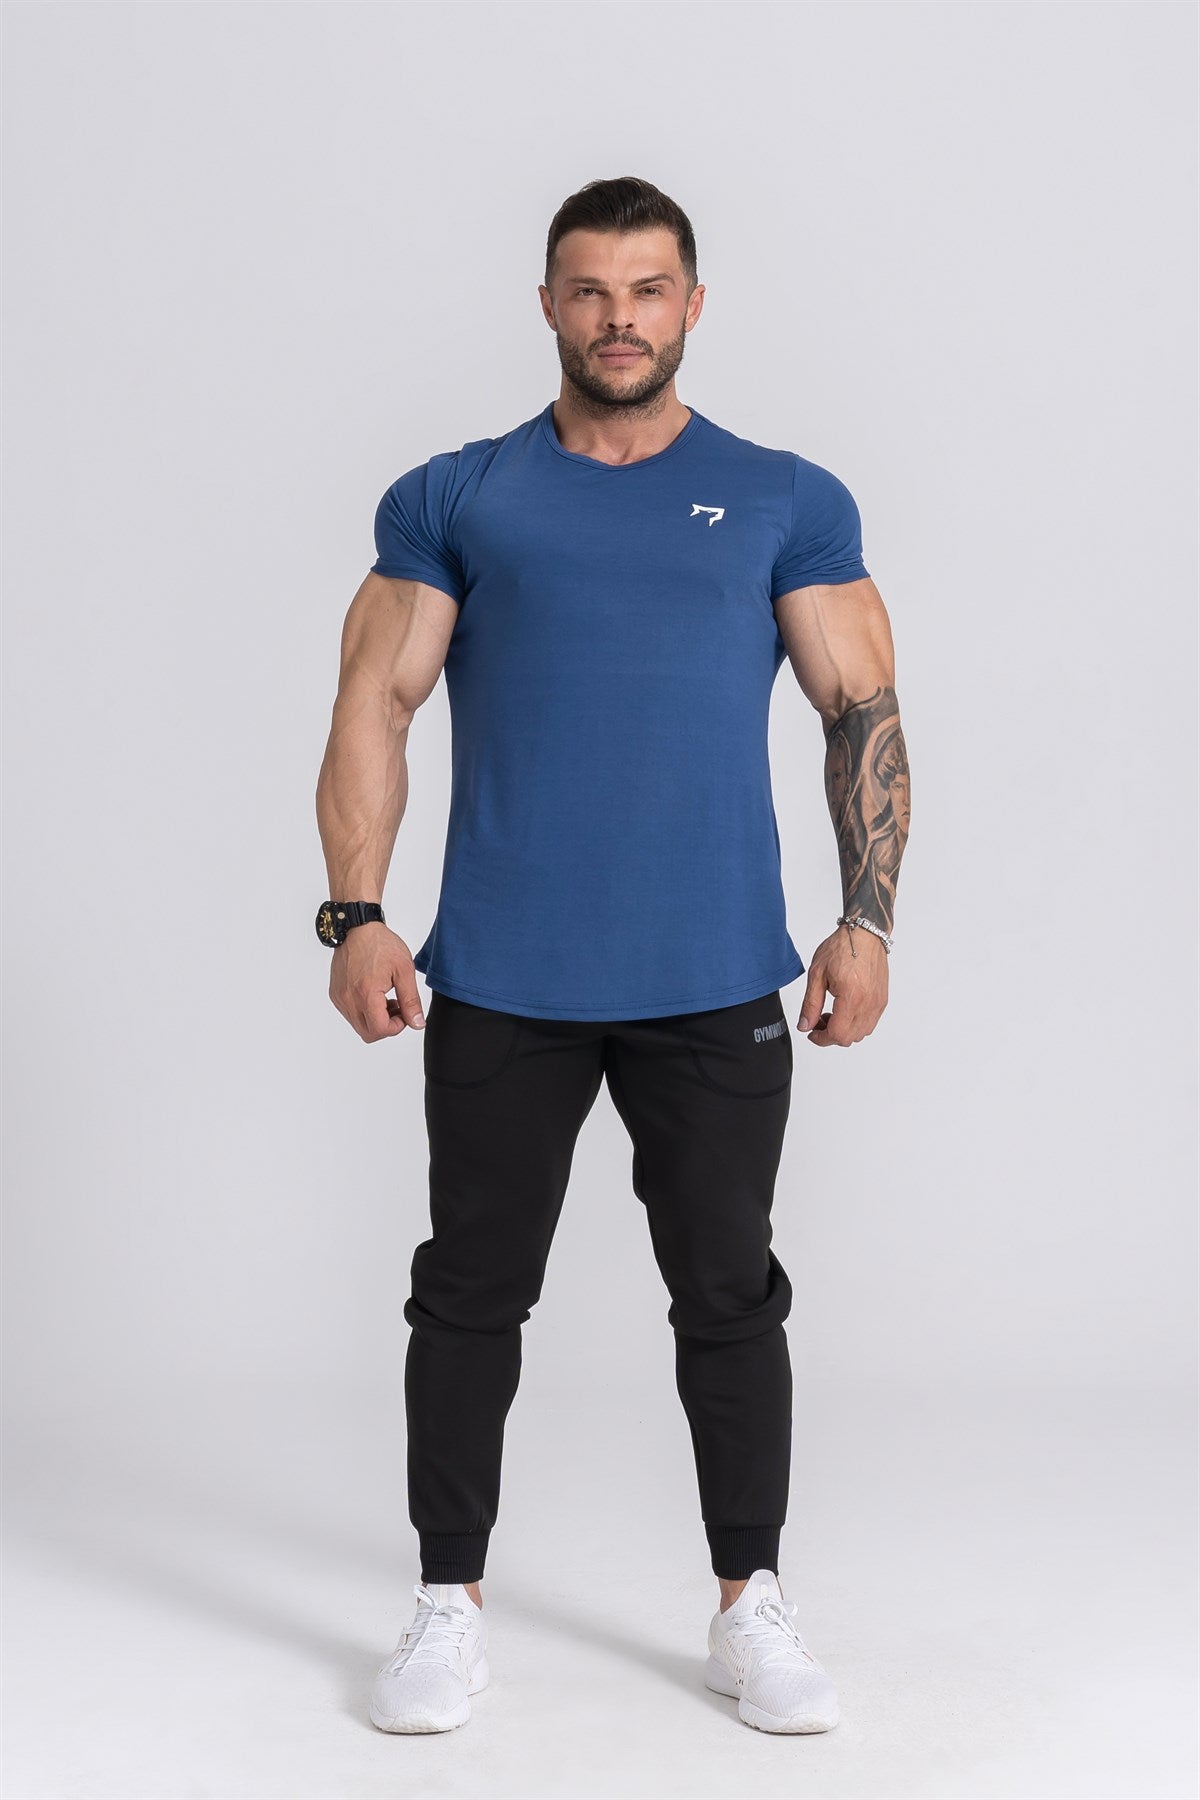 Gymwolves Man Sport T-Shirt  | Workout Tanktop |